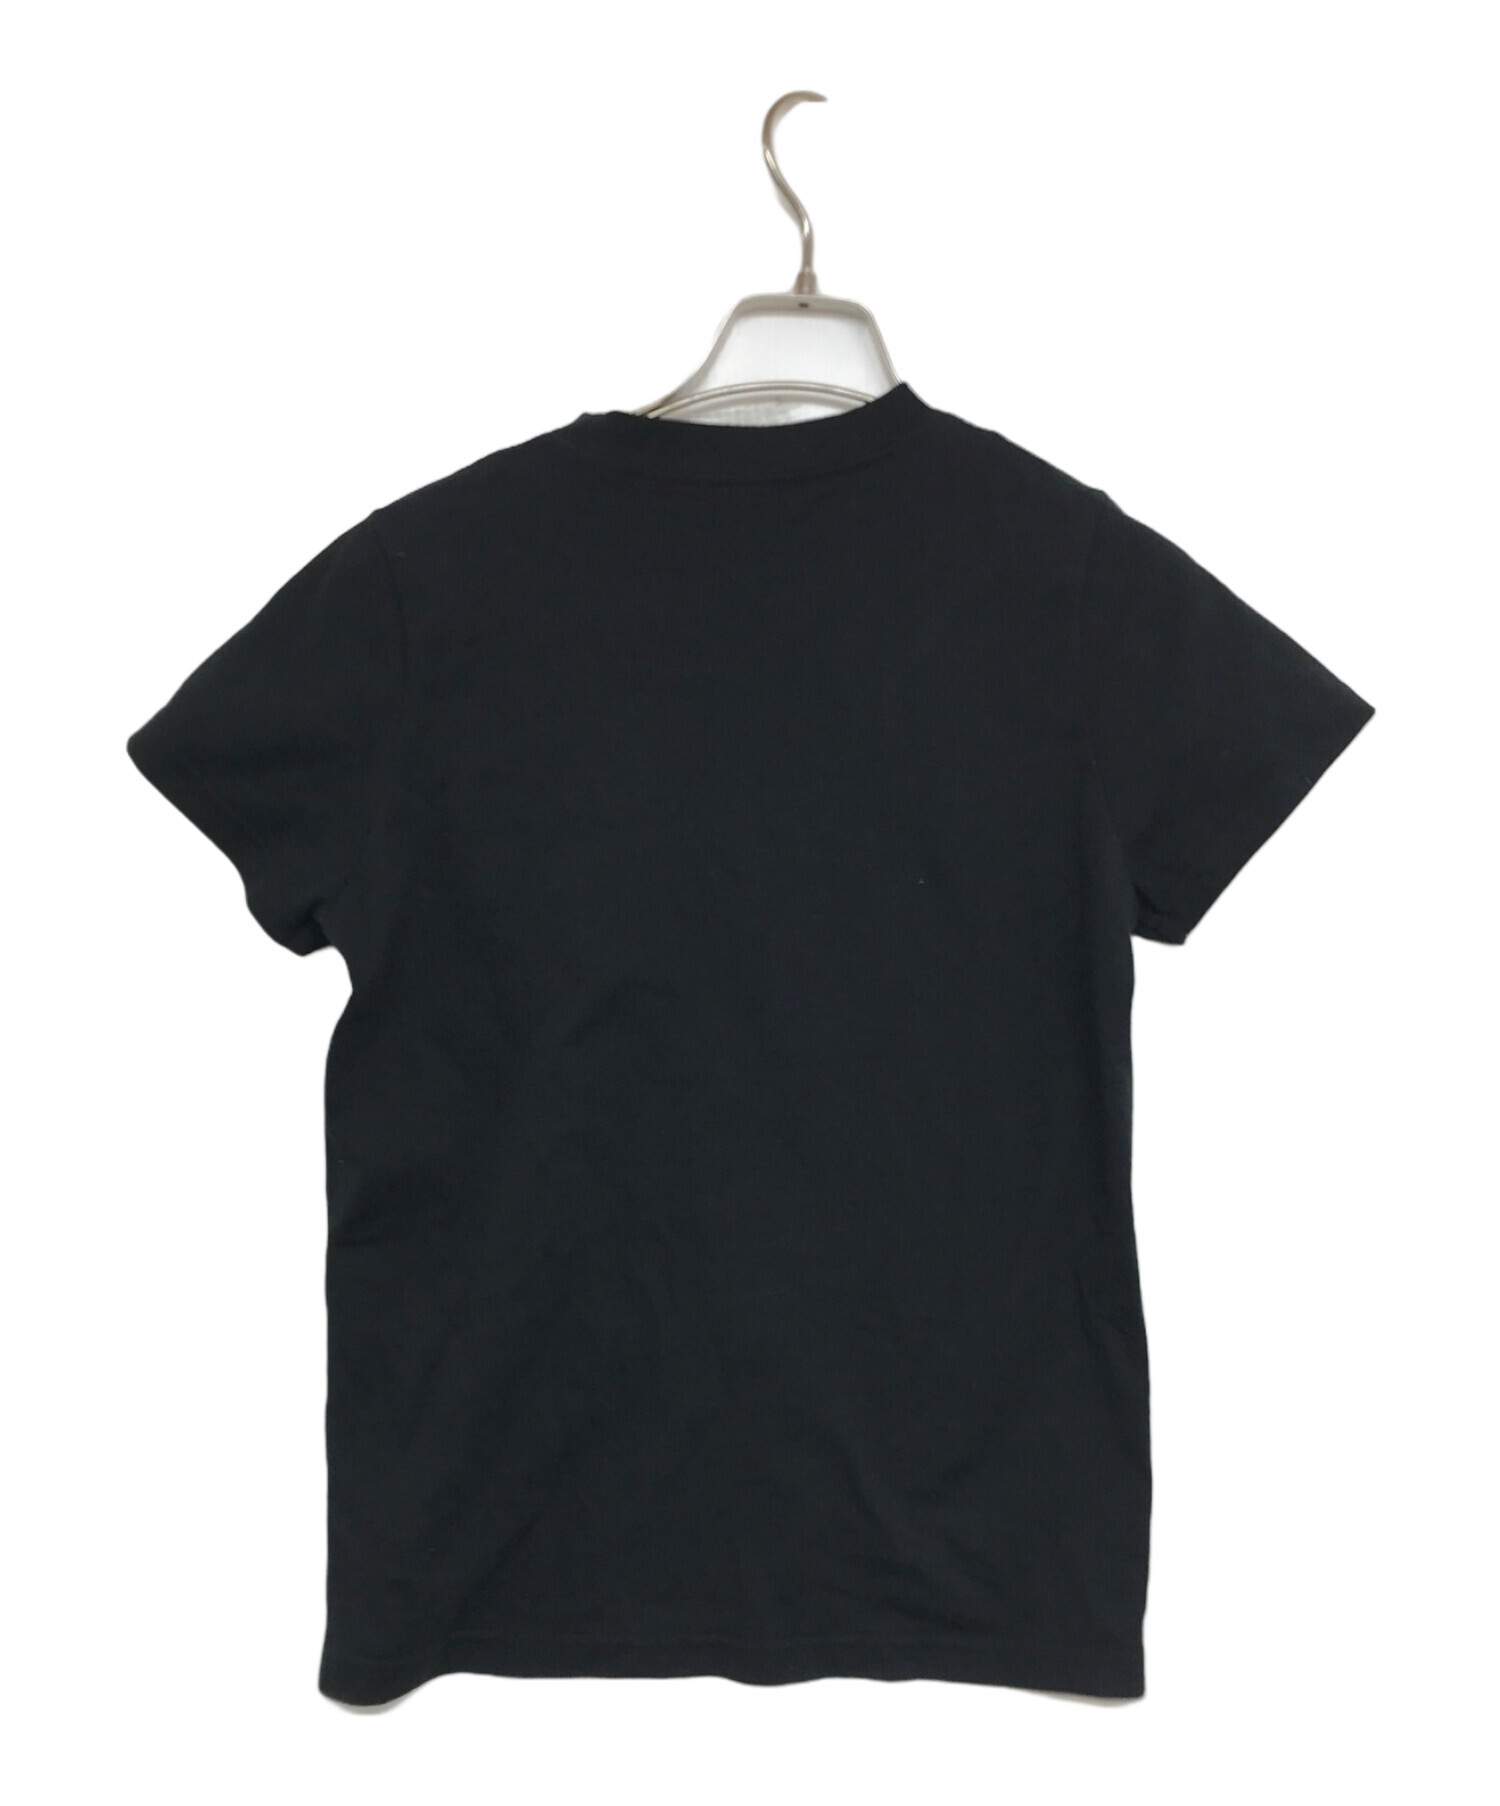 バレンシアガ　BB regular T-shirt ブラック断捨離のため出品いたします